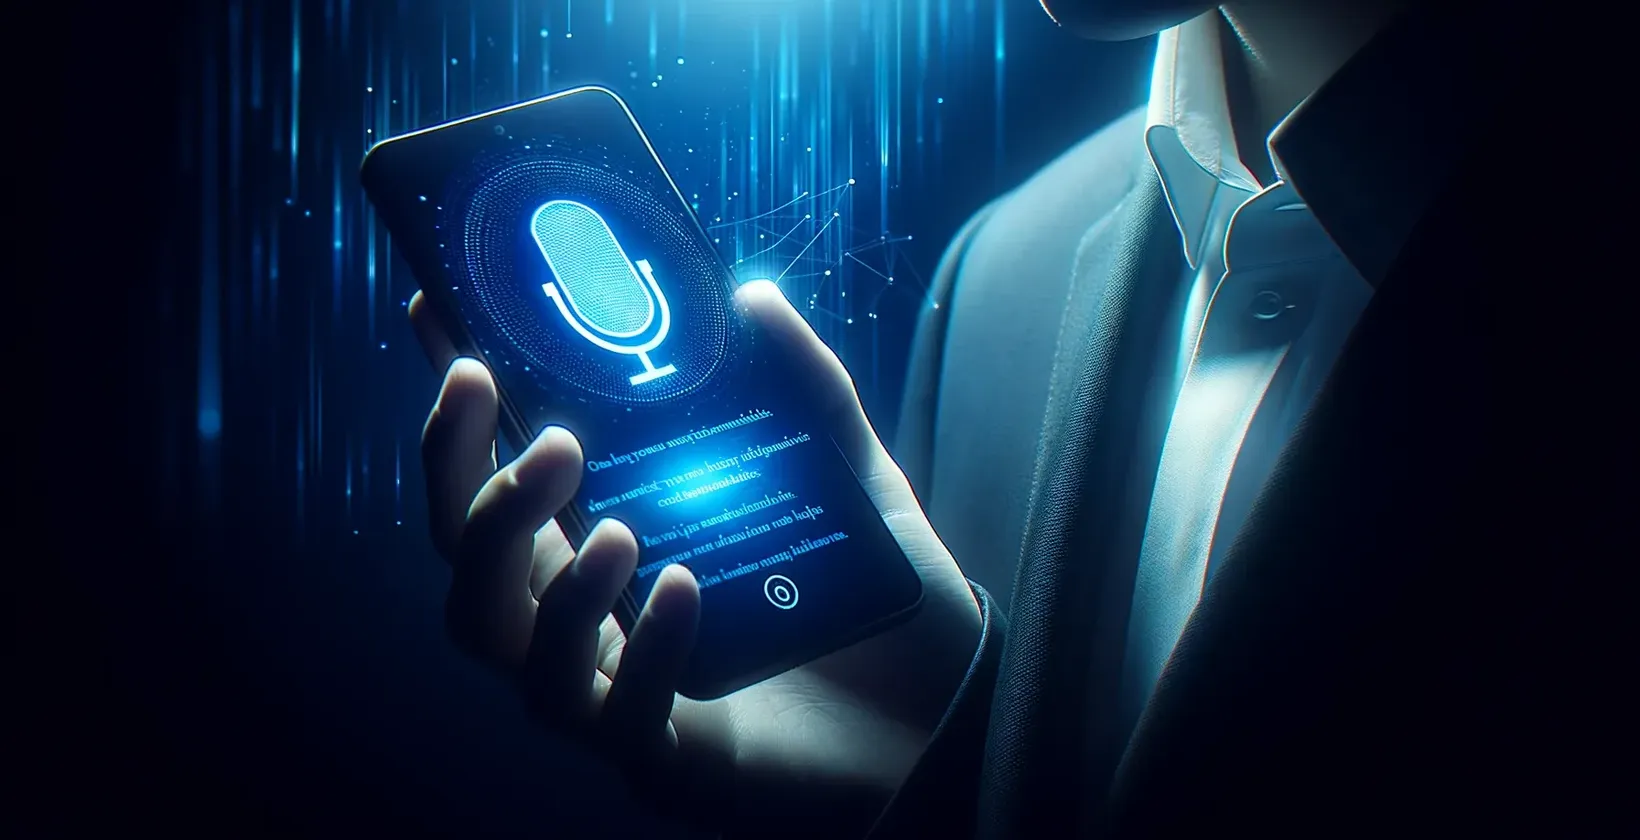 رجل يرتدي ملابس أنيقة يحمل هاتفا ذكيا يعرض مساعدا صوتيا على الشاشة ، أثناء استخدام تطبيق الإملاء.